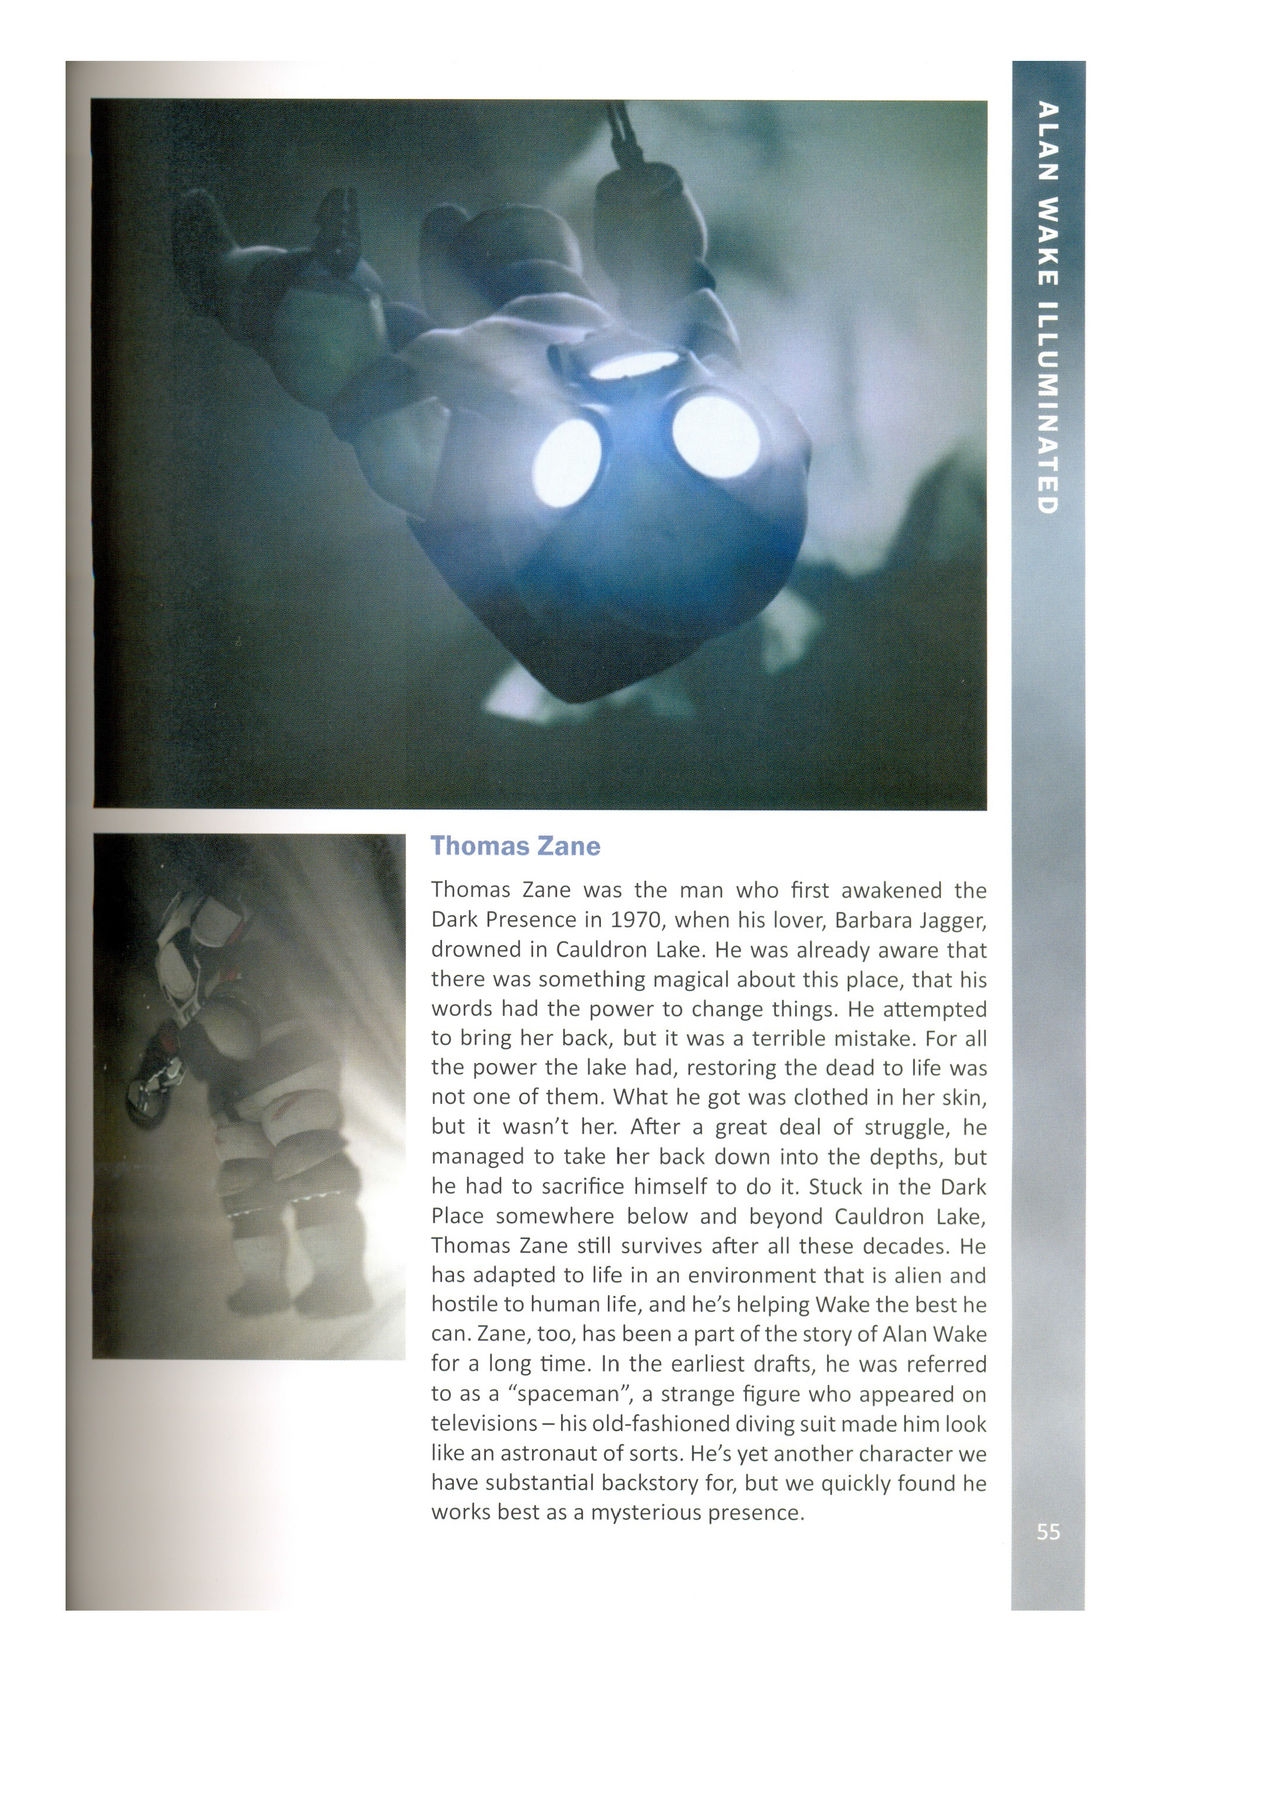 Alan Wake Illuminated 55